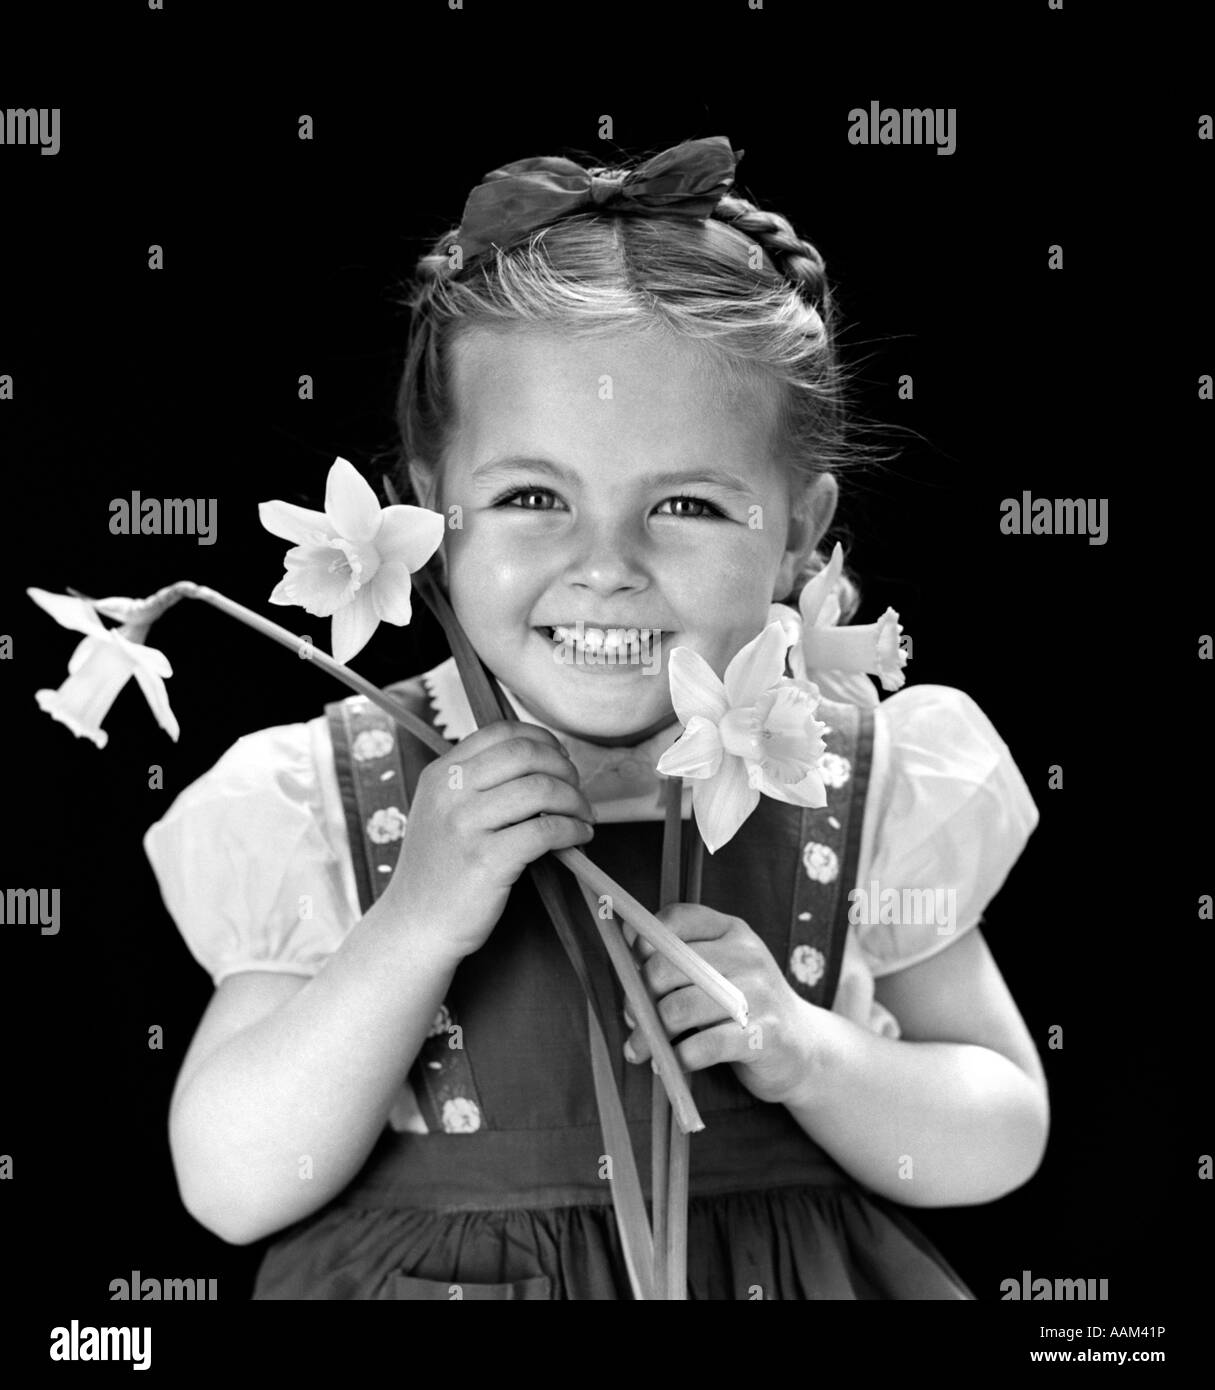 1940s sorridente ragazza mantenendo la molla narcisi che indossa il ponticello con treccia di capelli trattenuto sulla sommità della testa con archetto Foto Stock